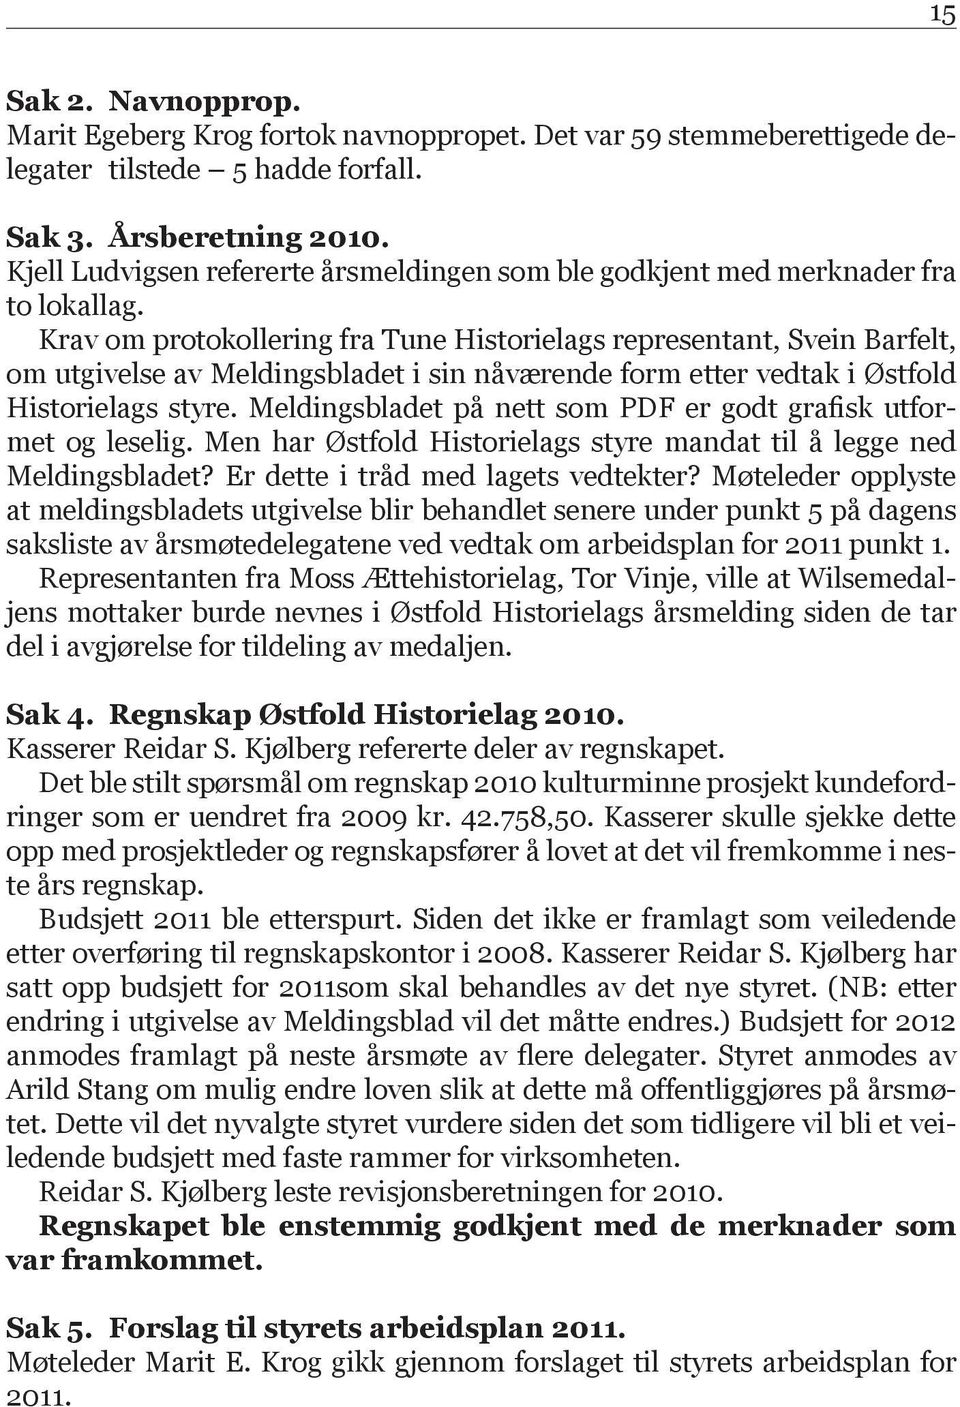 Krav om protokollering fra Tune Historielags representant, Svein Barfelt, om utgivelse av Meldingsbladet i sin nåværende form etter vedtak i Østfold Historielags styre.